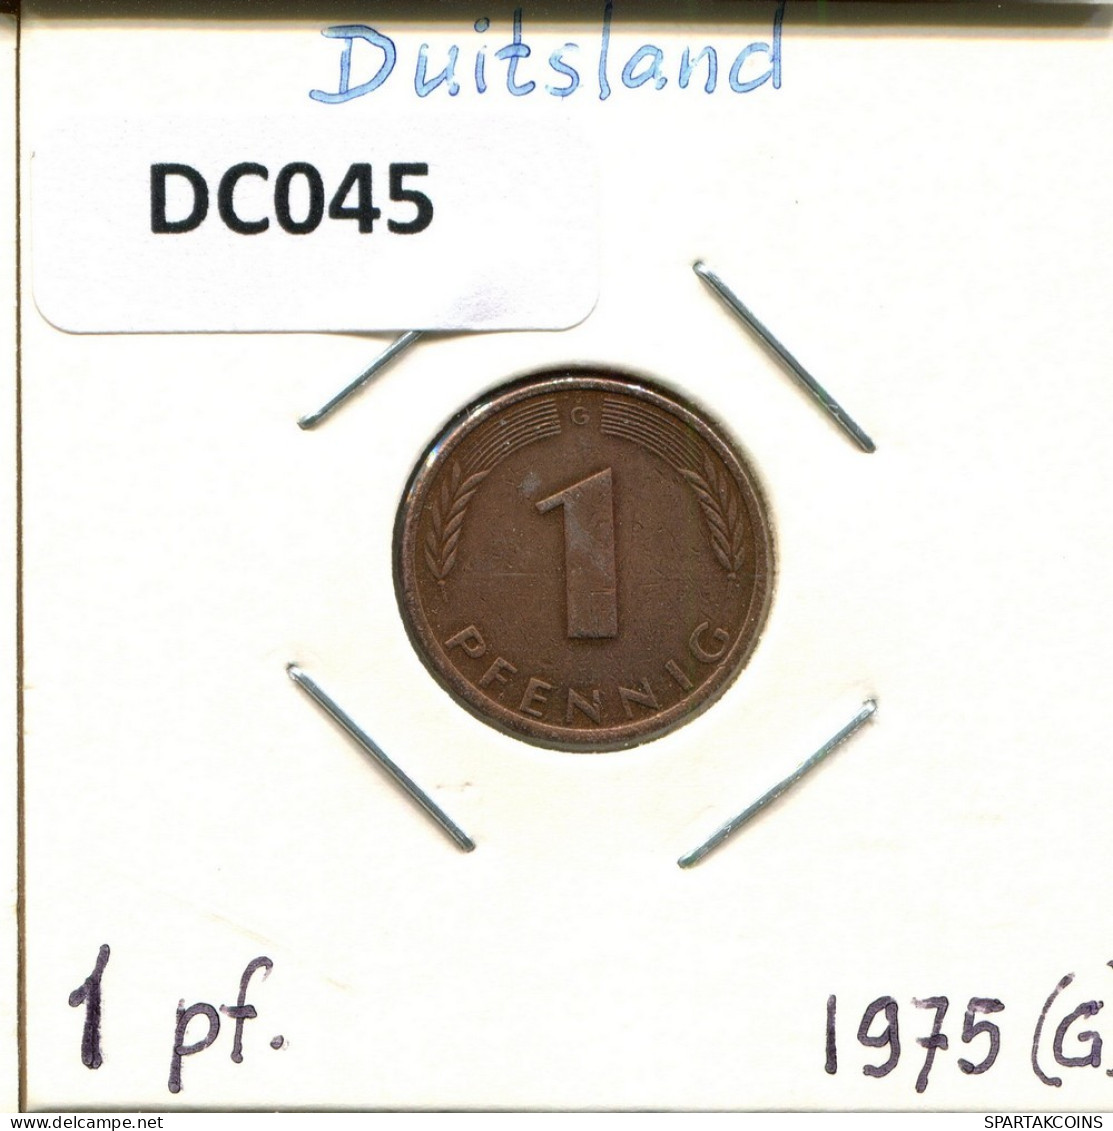 1 PFENNIG 1975 G BRD DEUTSCHLAND Münze GERMANY #DC045.D.A - 1 Pfennig